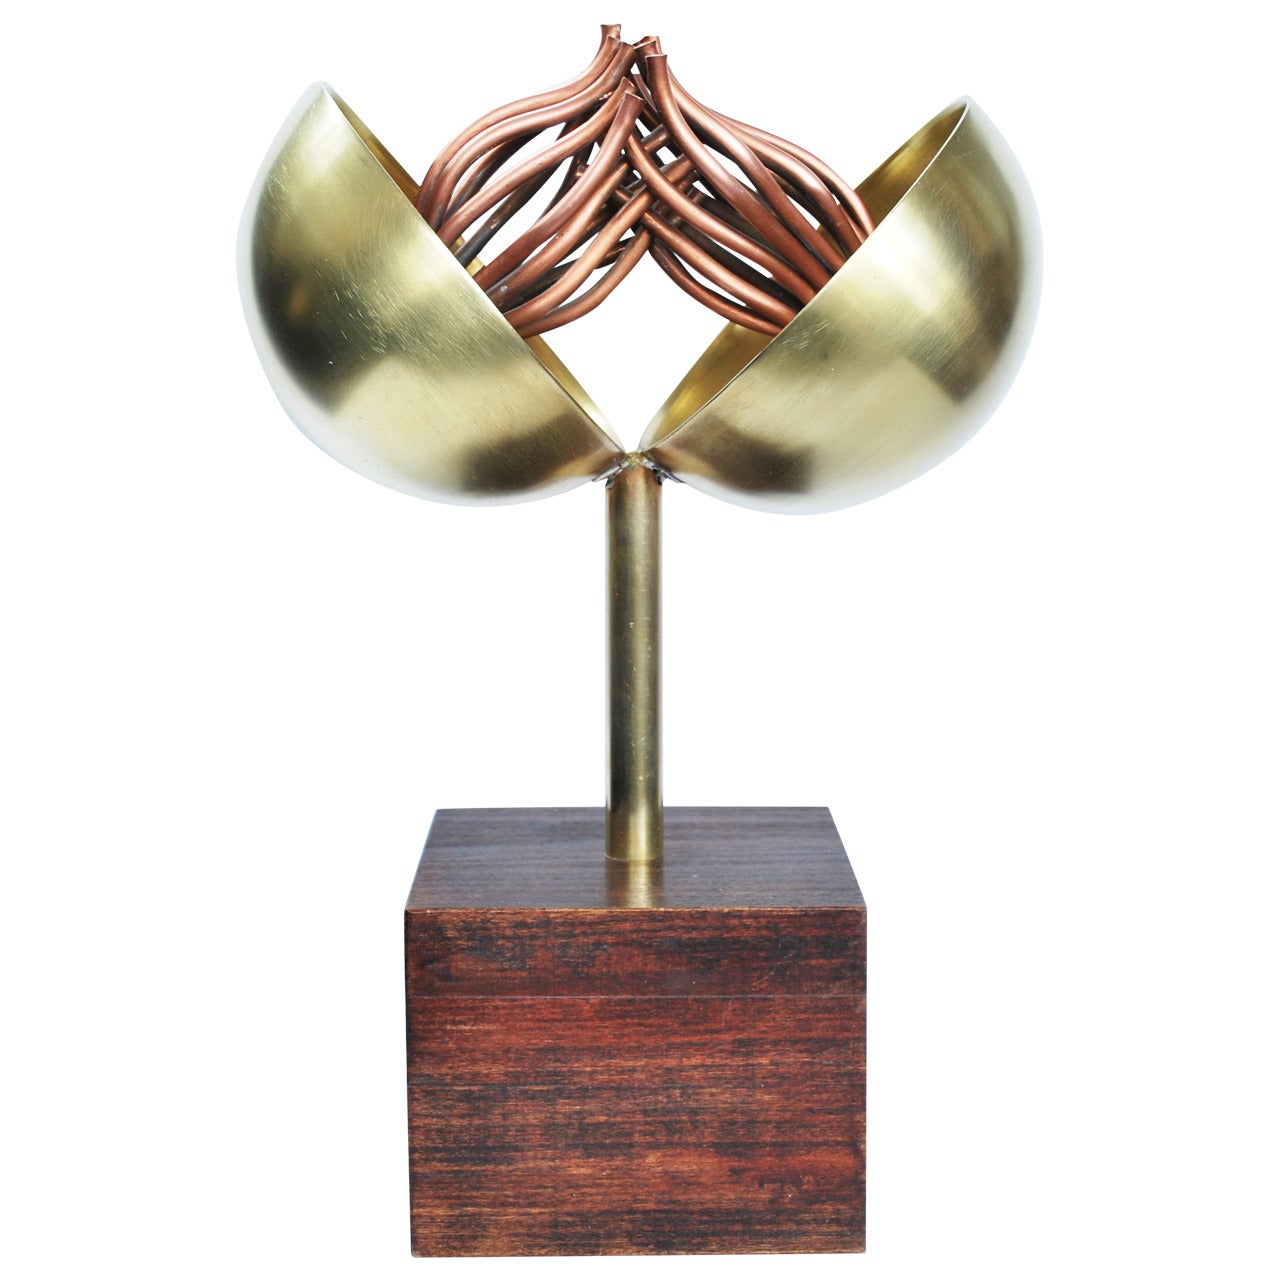 Carlos Davila "Medusa" Sculpture For Sale